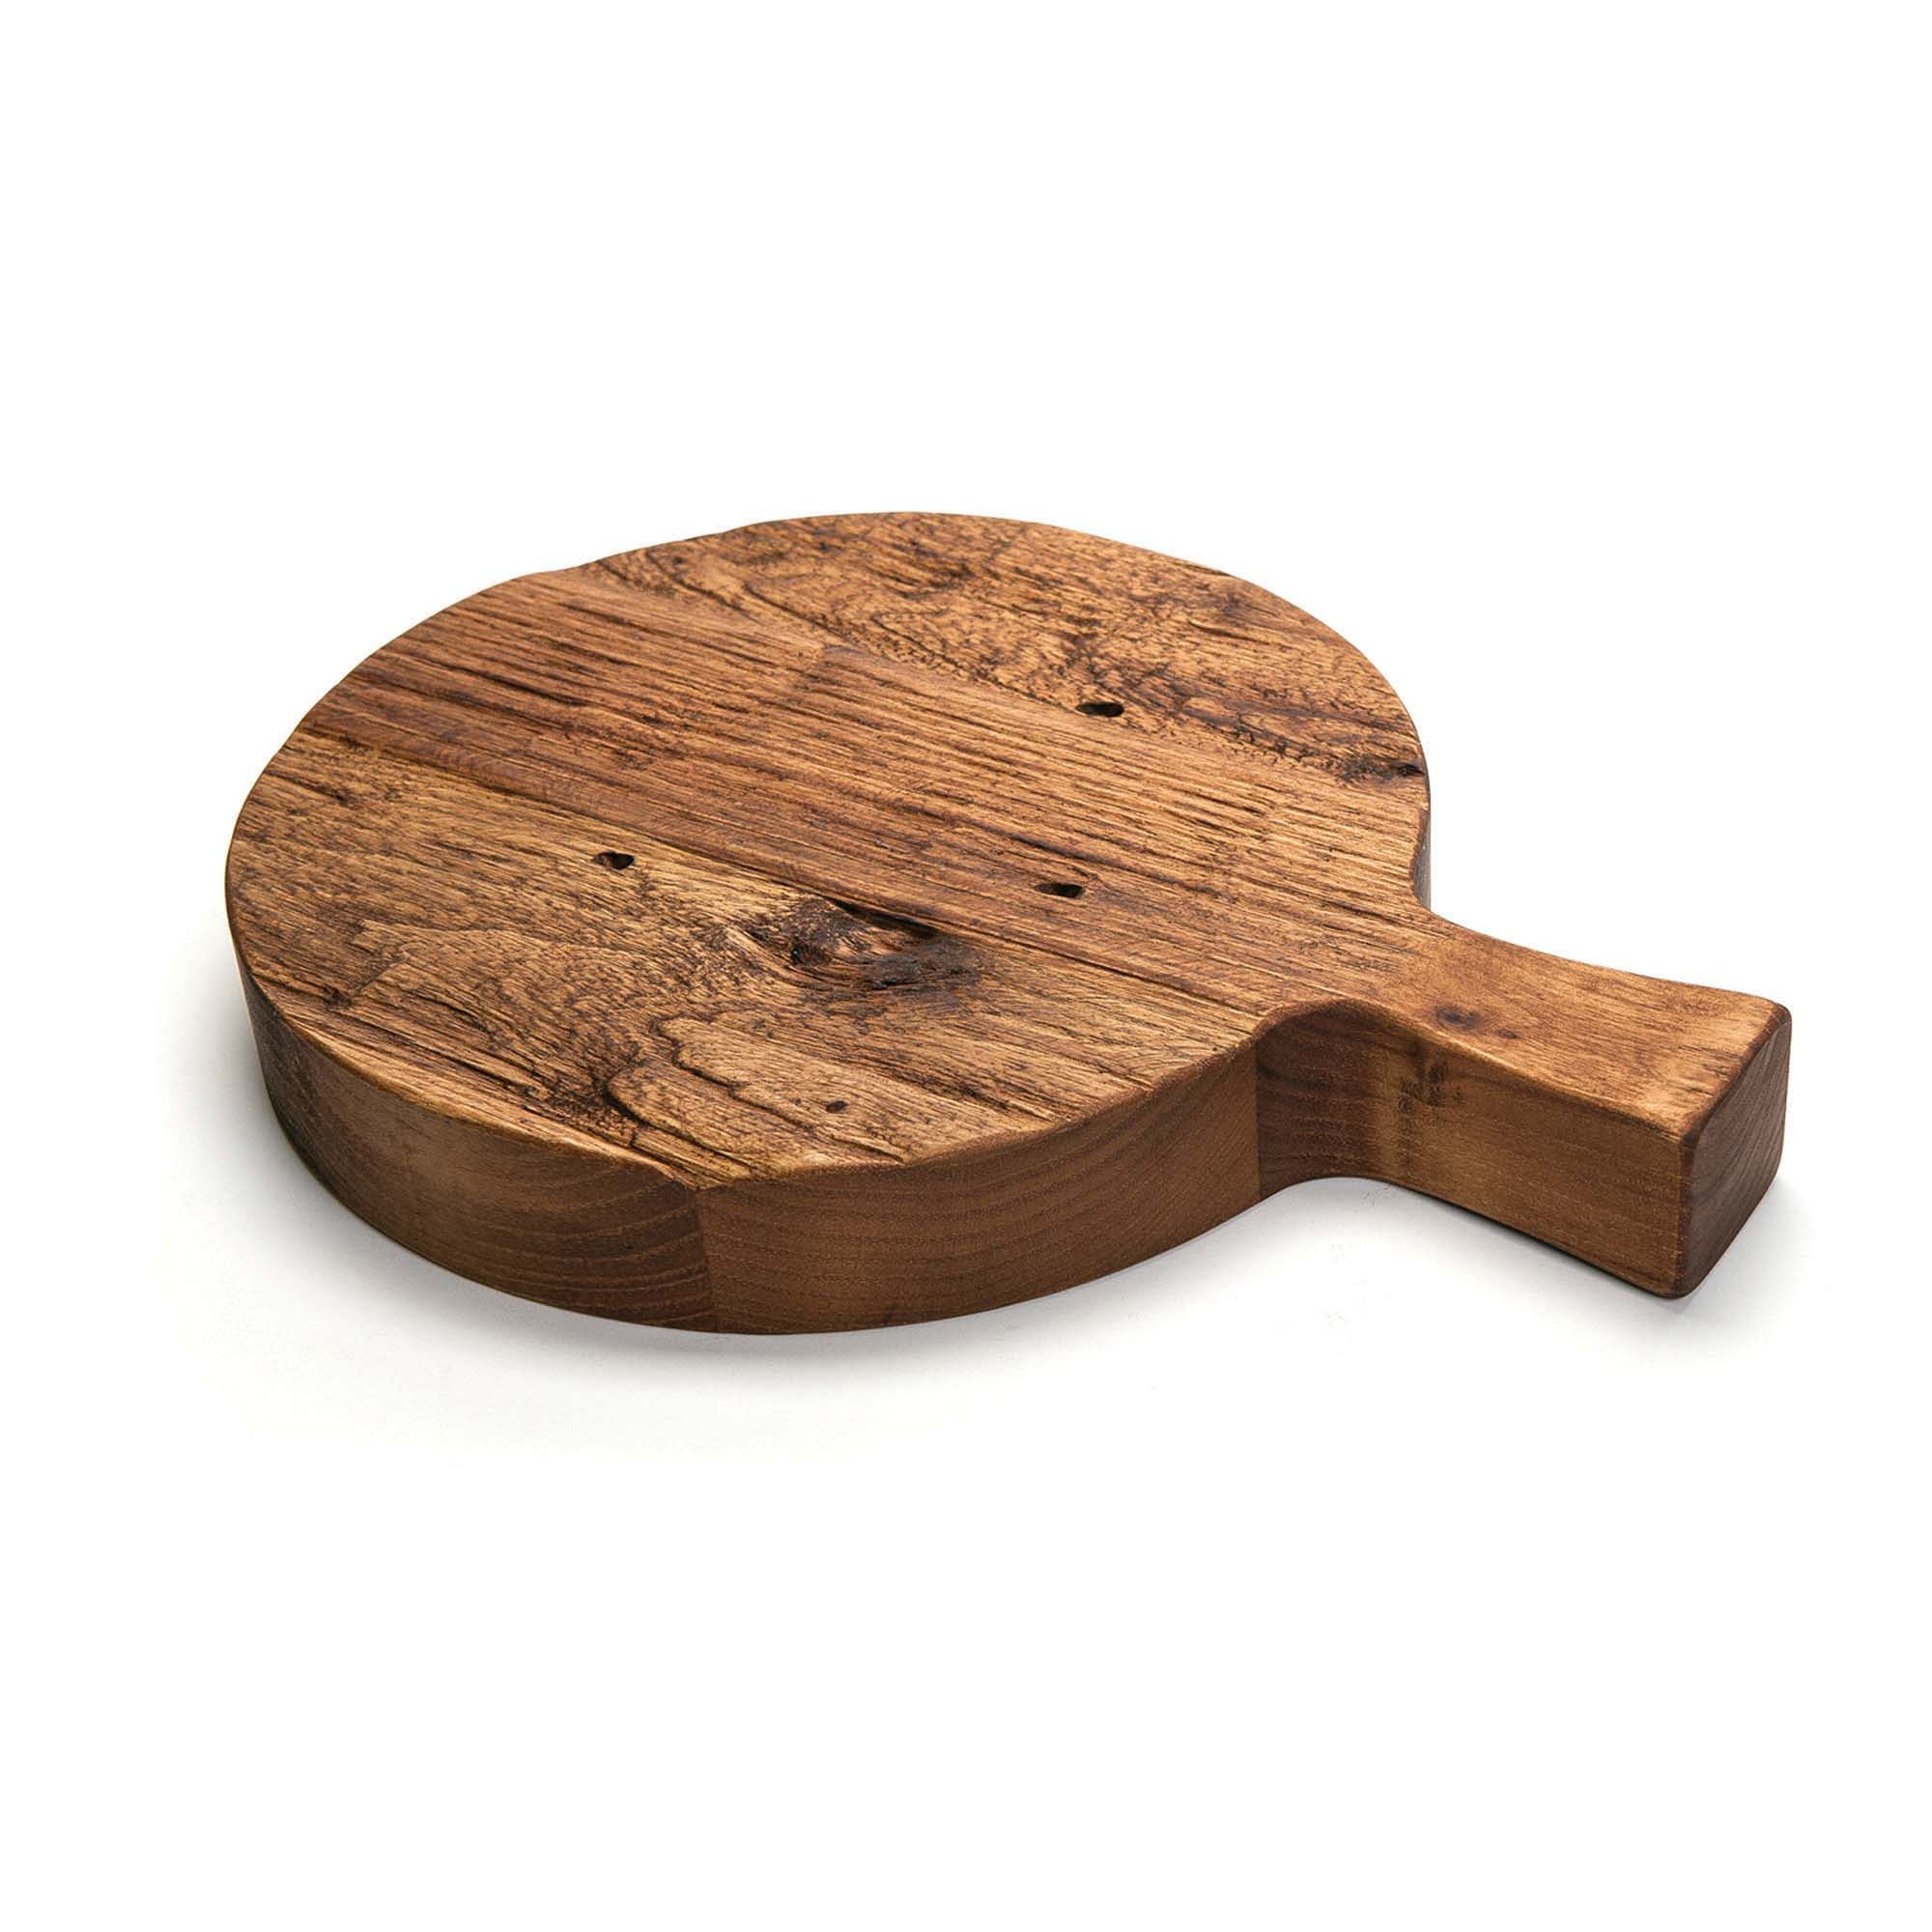 Oak Wood Italian Style Cutting Boards | West Elm